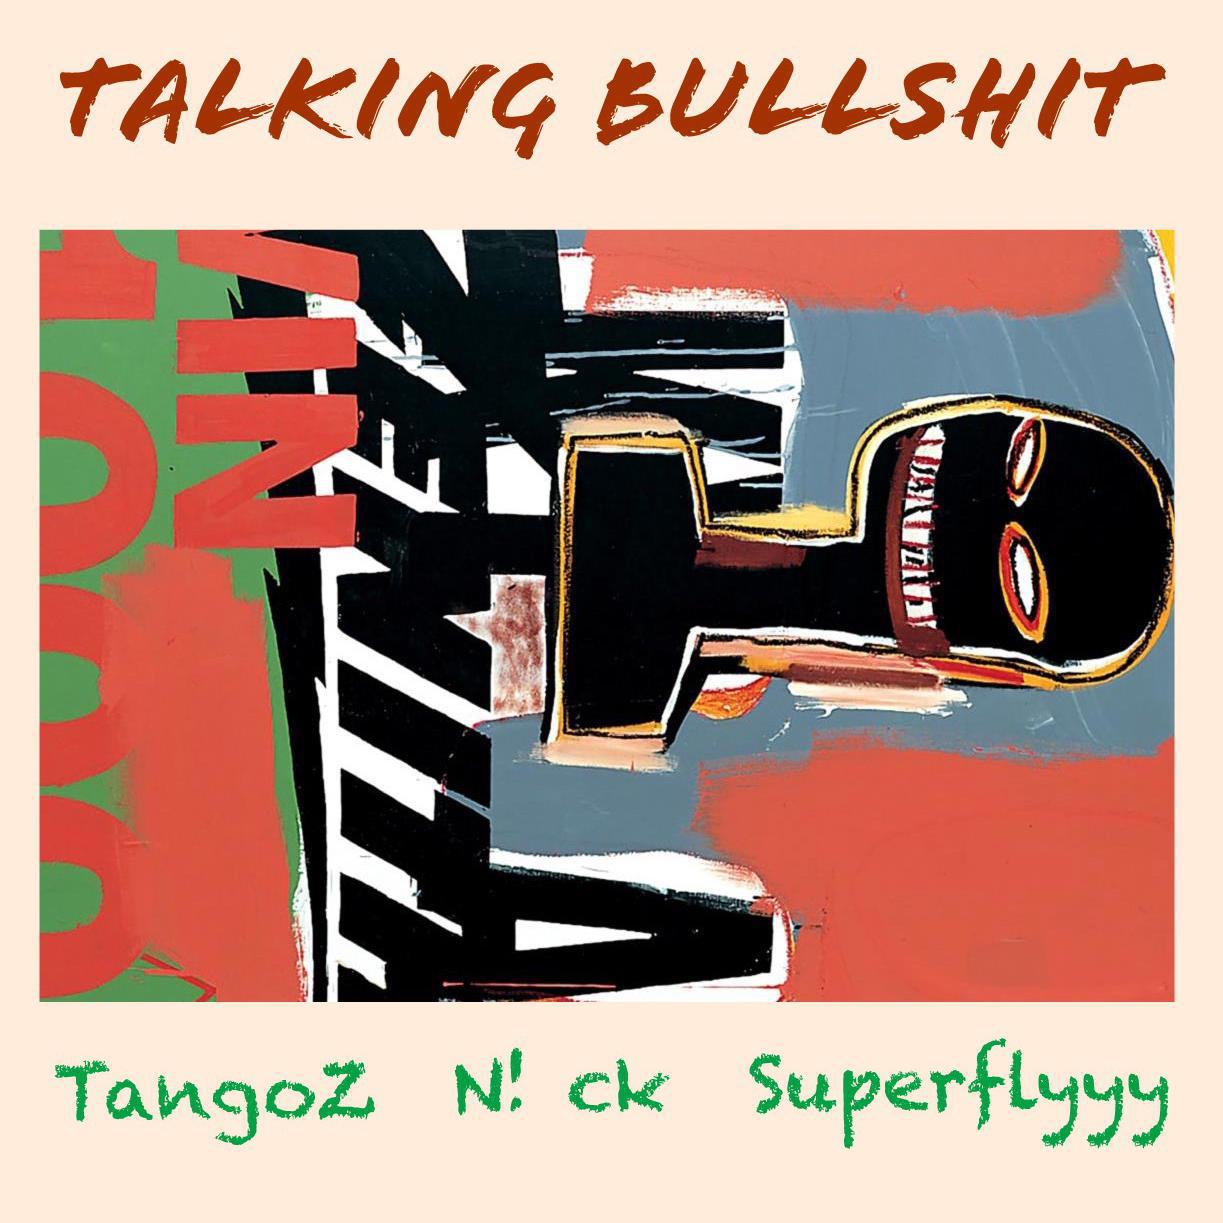 TangoZ - Talking bullshxt